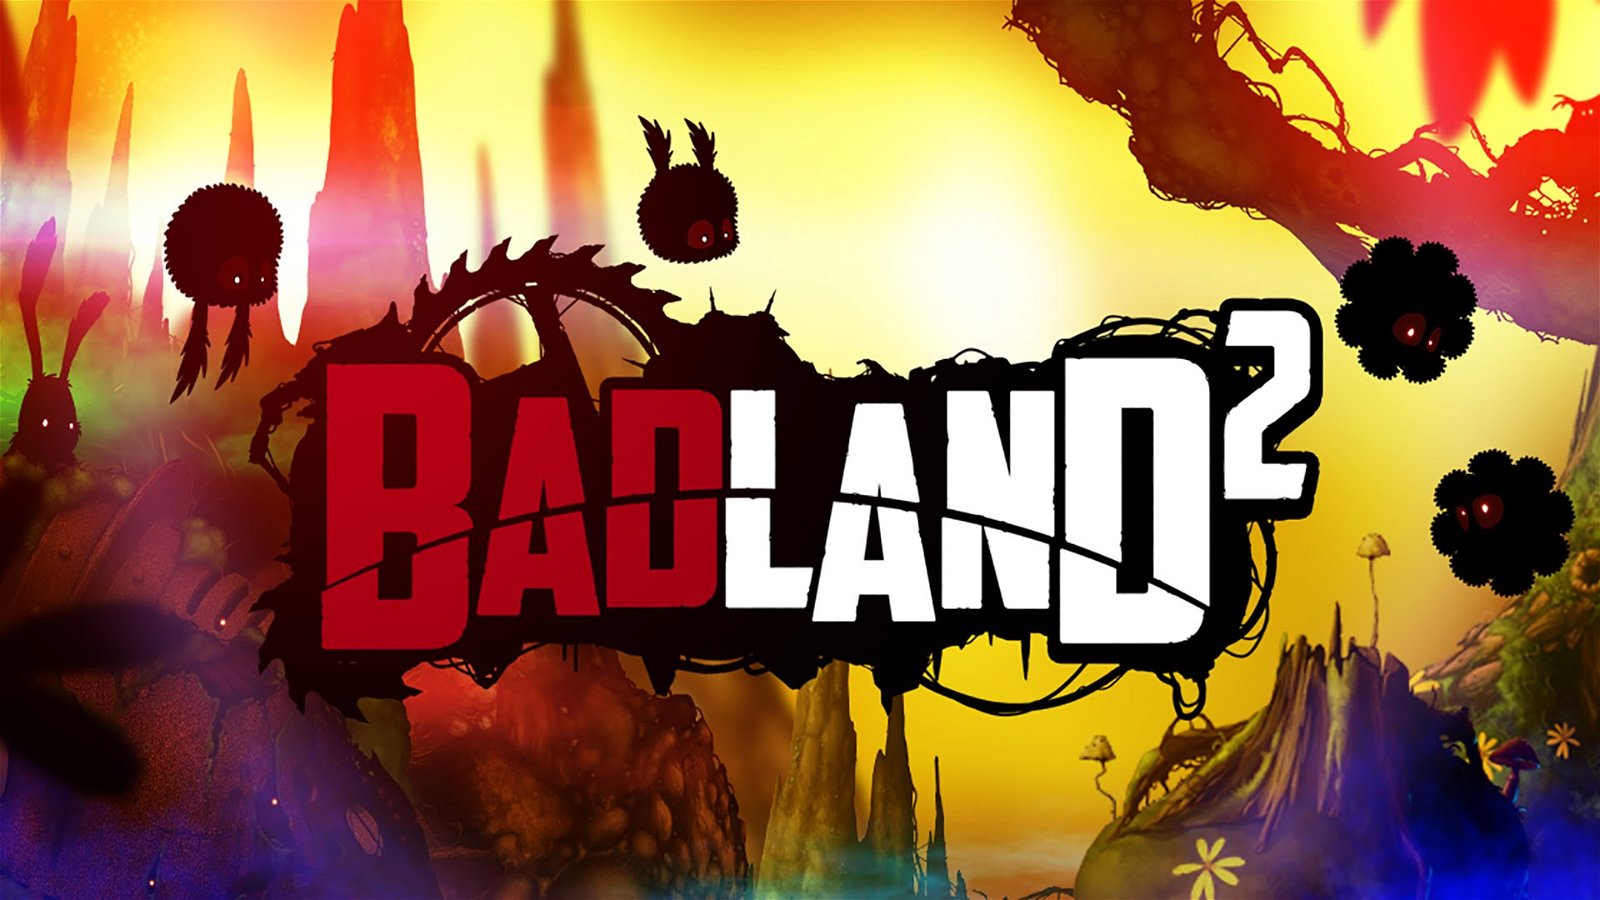 Image of Badland 2